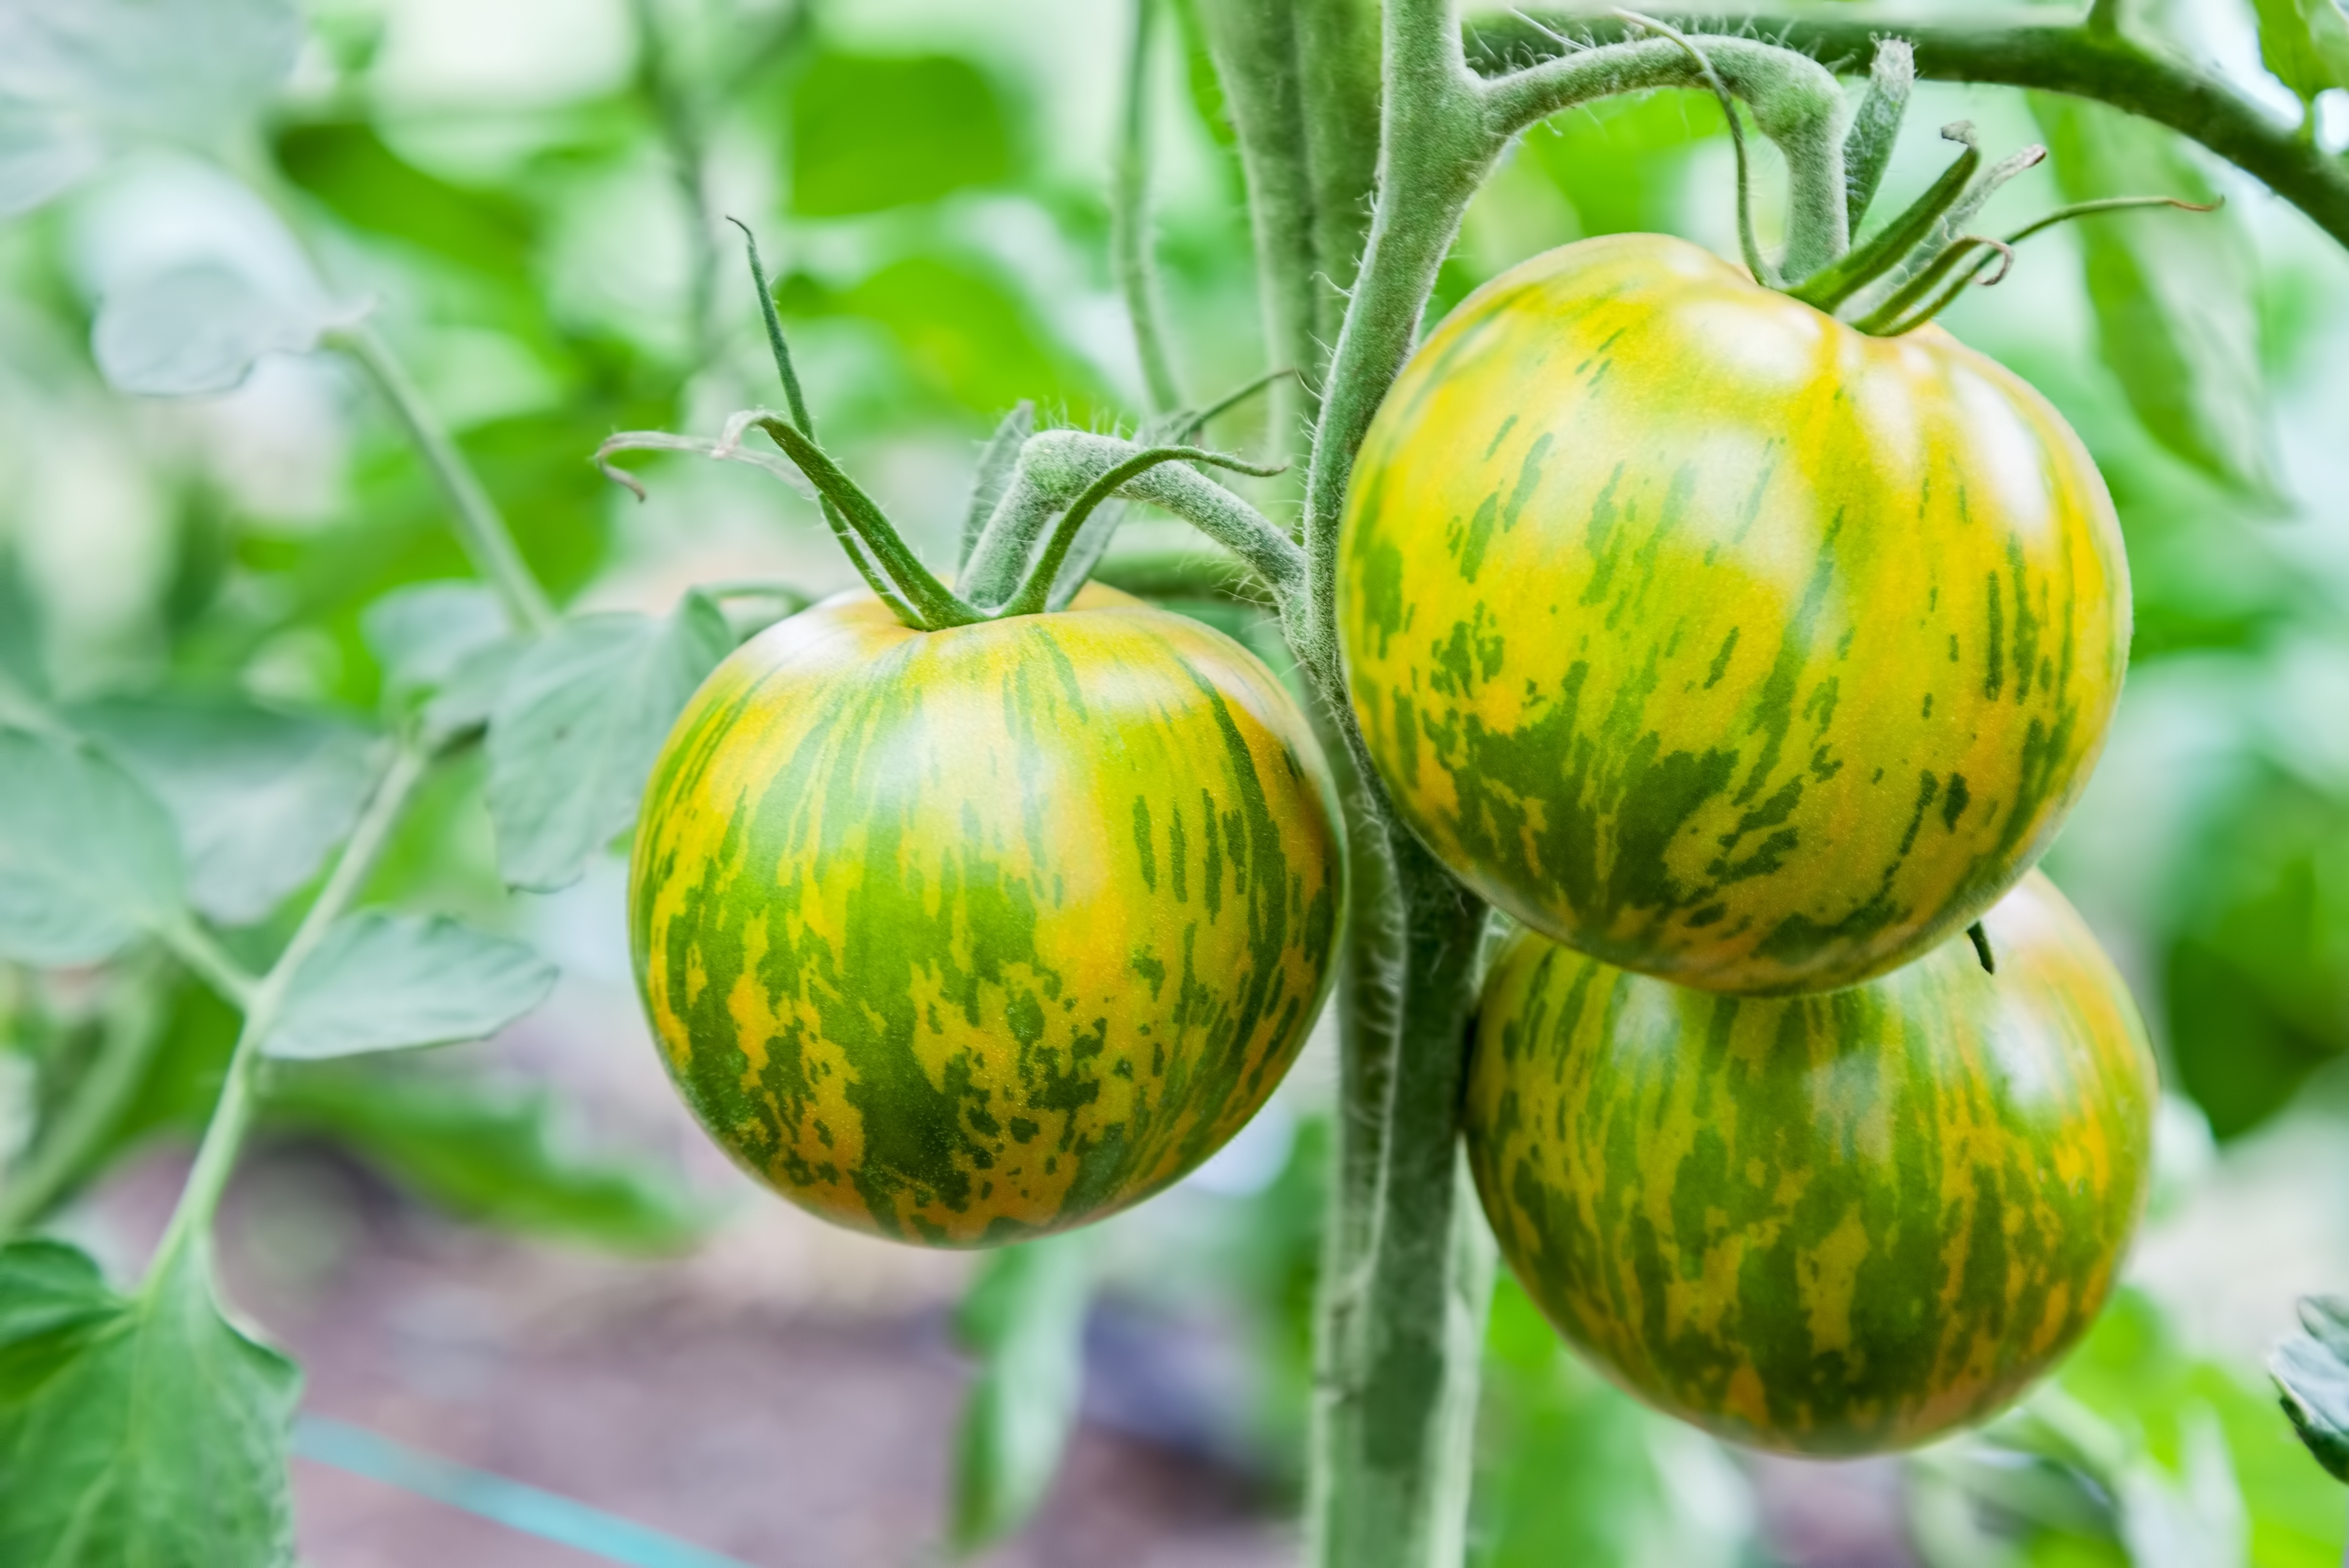 La tomate verte zébrée est une variété de tomate surprenante, à la peau verte et rayée, qui se récolte à la mi-saison. Copyright (c) 2017 Vadym Zaitsev/Shutterstock.